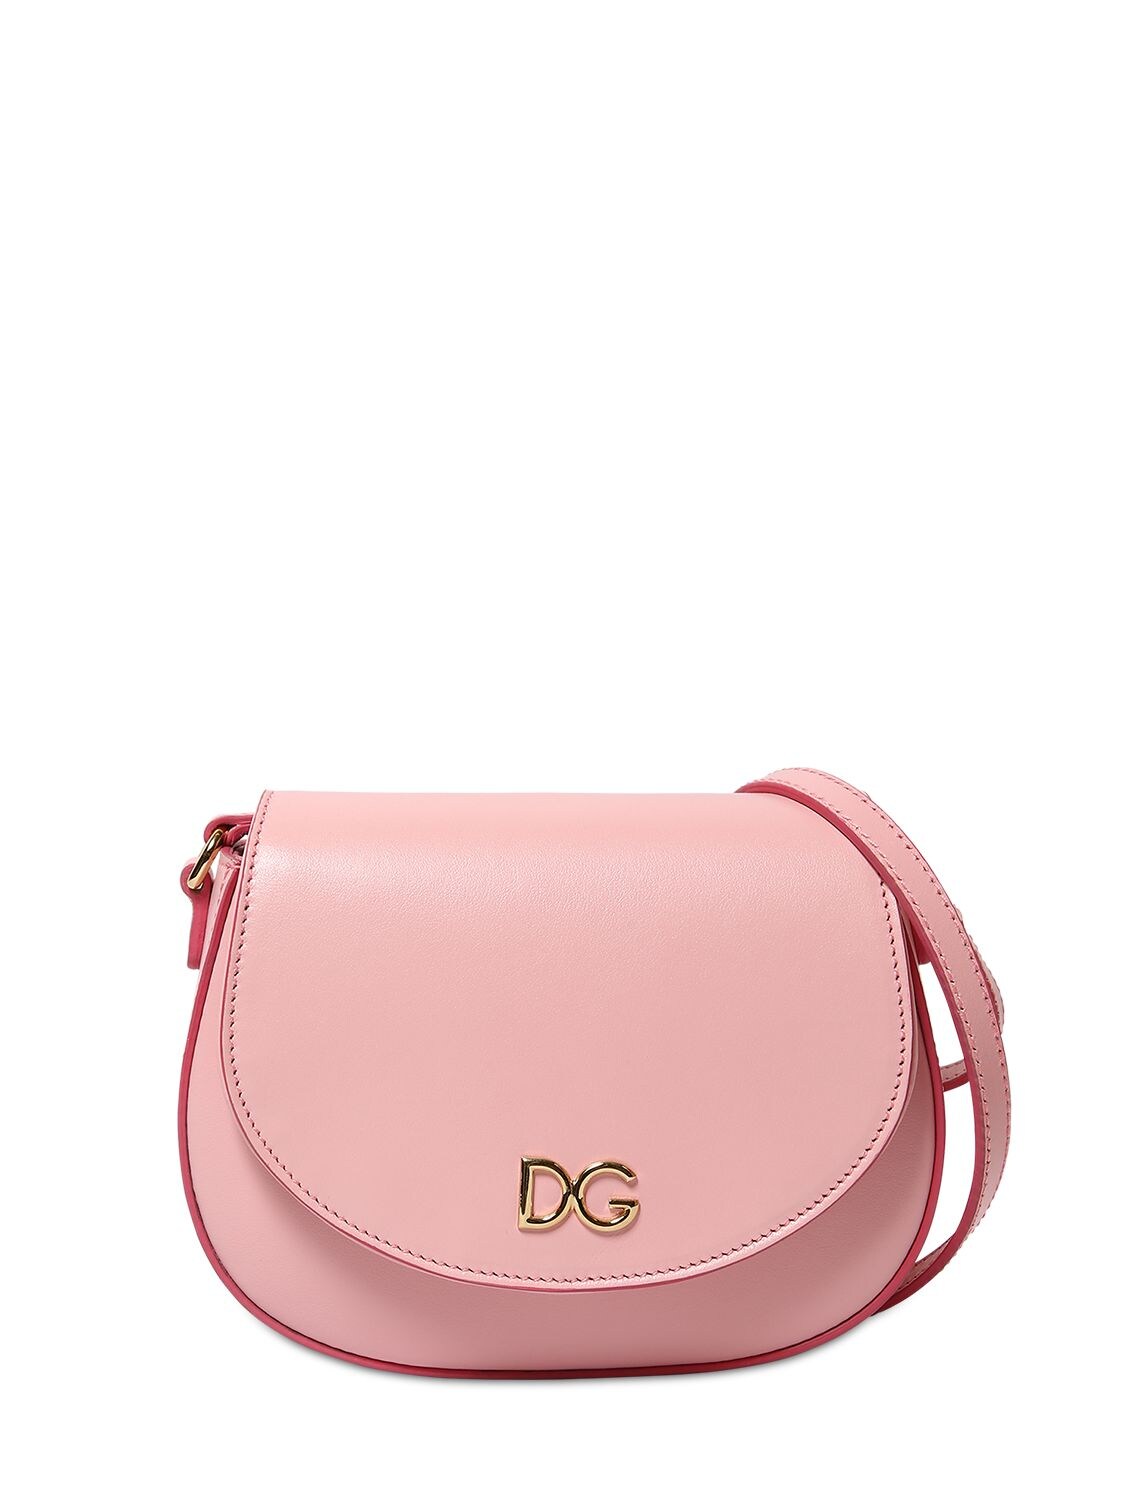 Dolce & Gabbana Kids' Leather Shoulder Bag In Pink